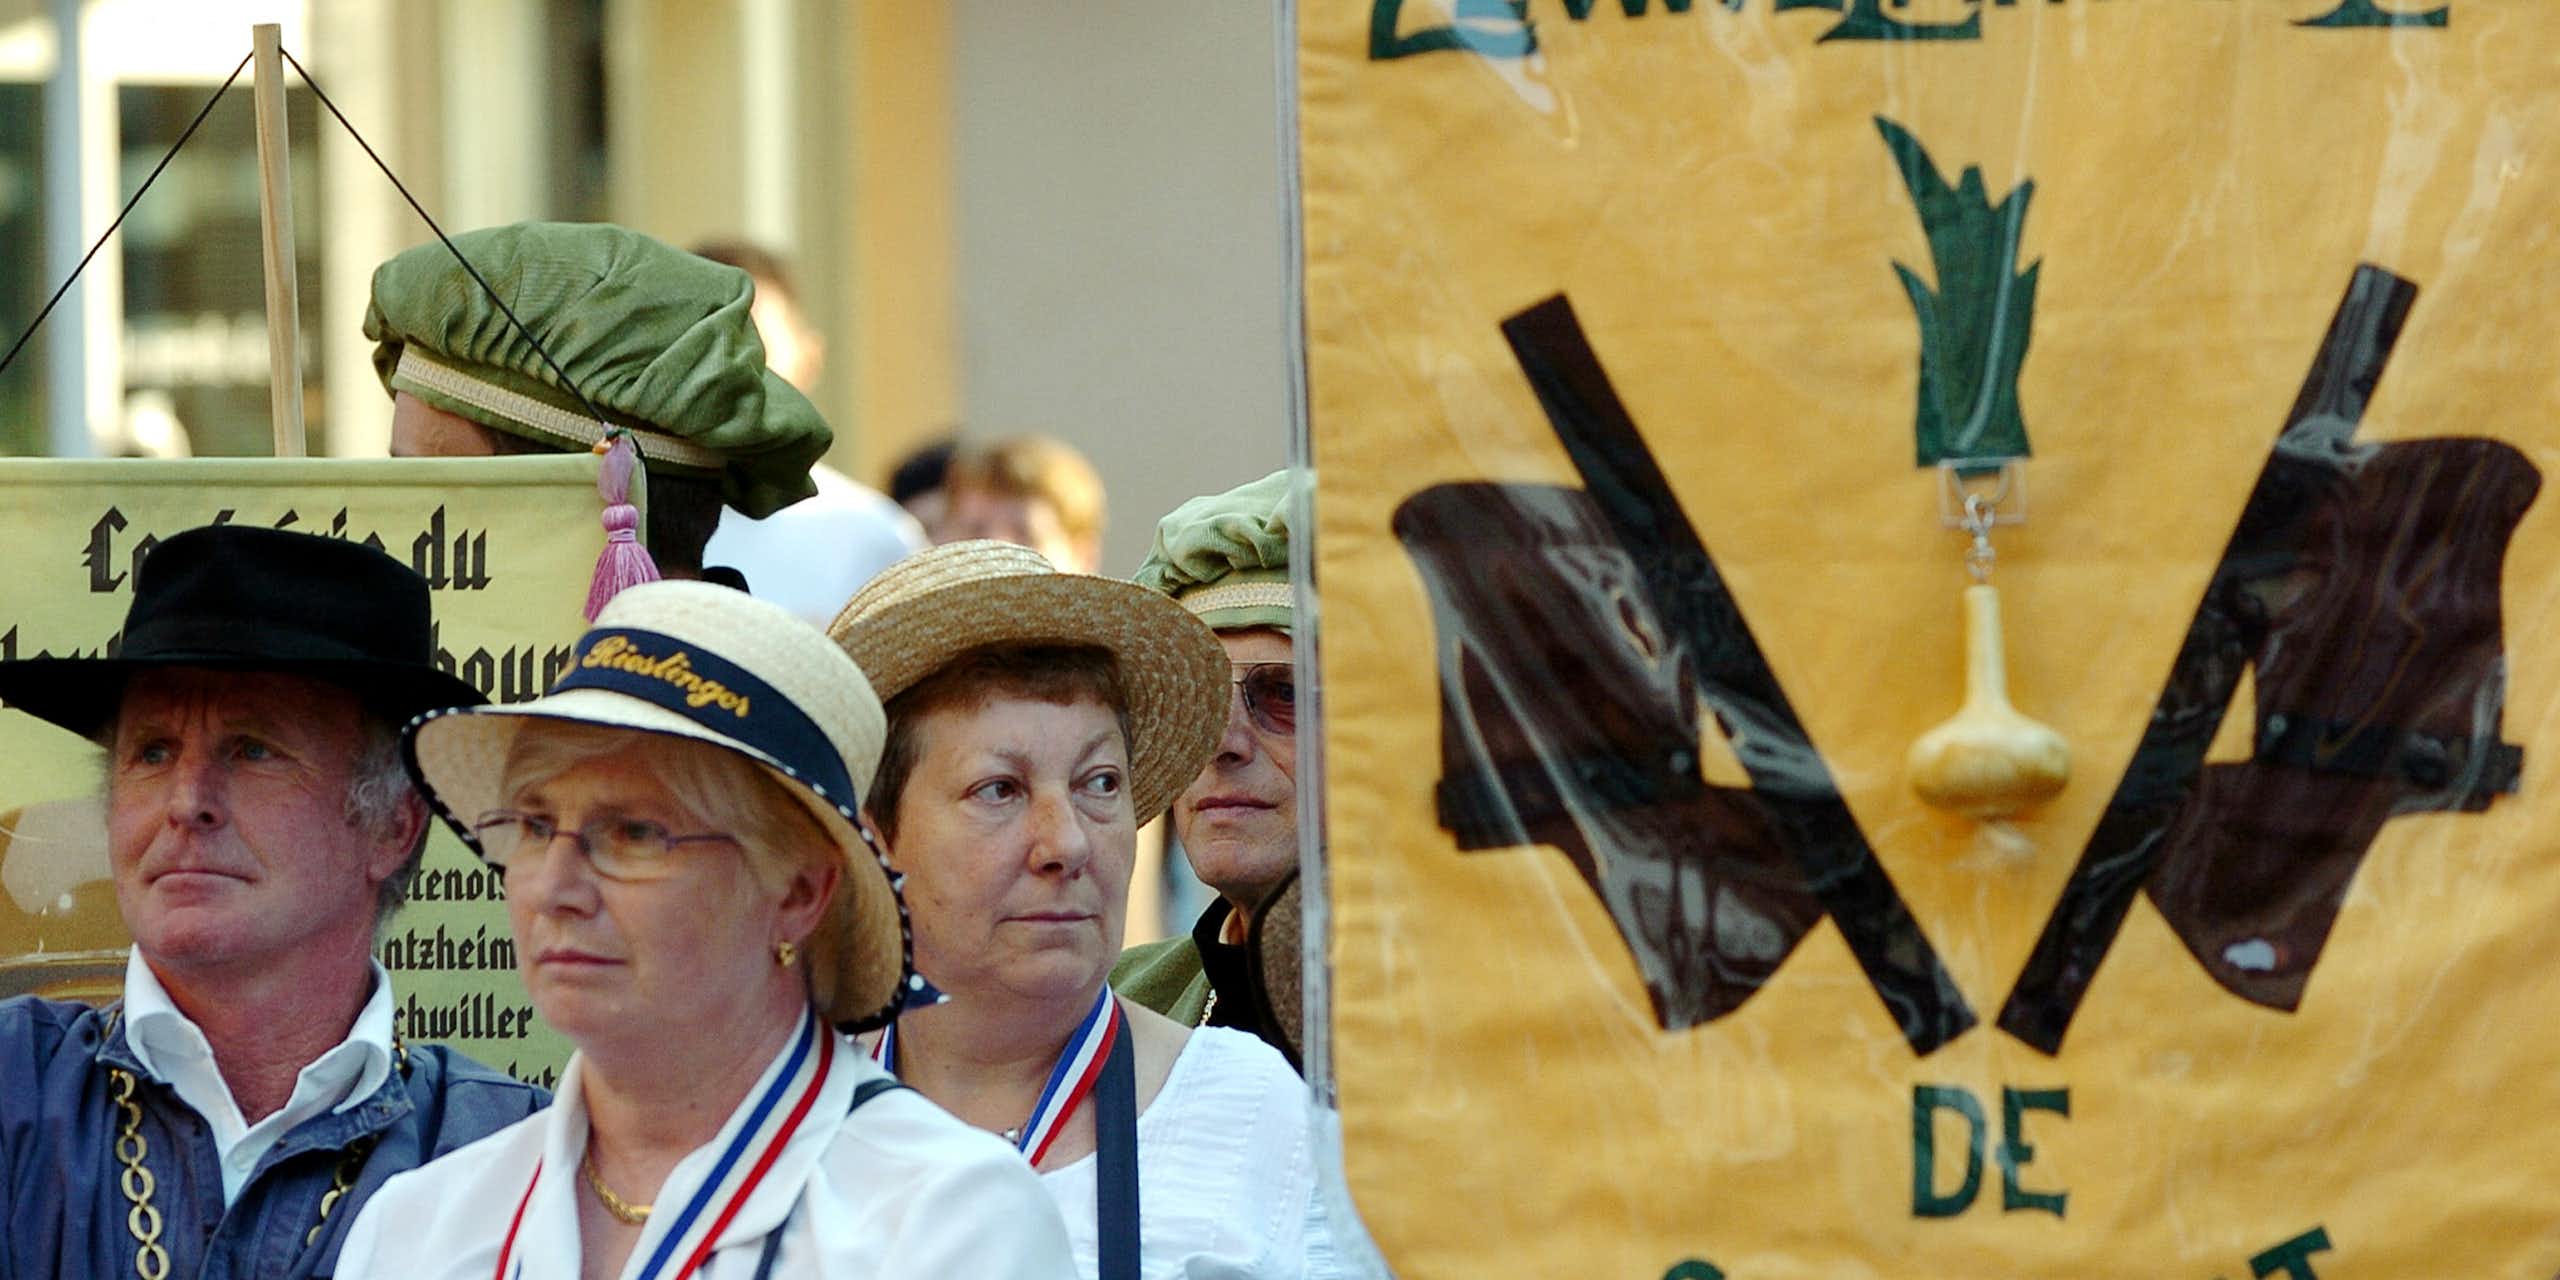 Des membres de la confrérie de l'oignon, la « Zewwelatreppler »,  pendant le défilé organisé à l'occasion de l'intronisation de nouveaux membres, le 05 août 2006 à Sélestat dans le Bas-Rhin.